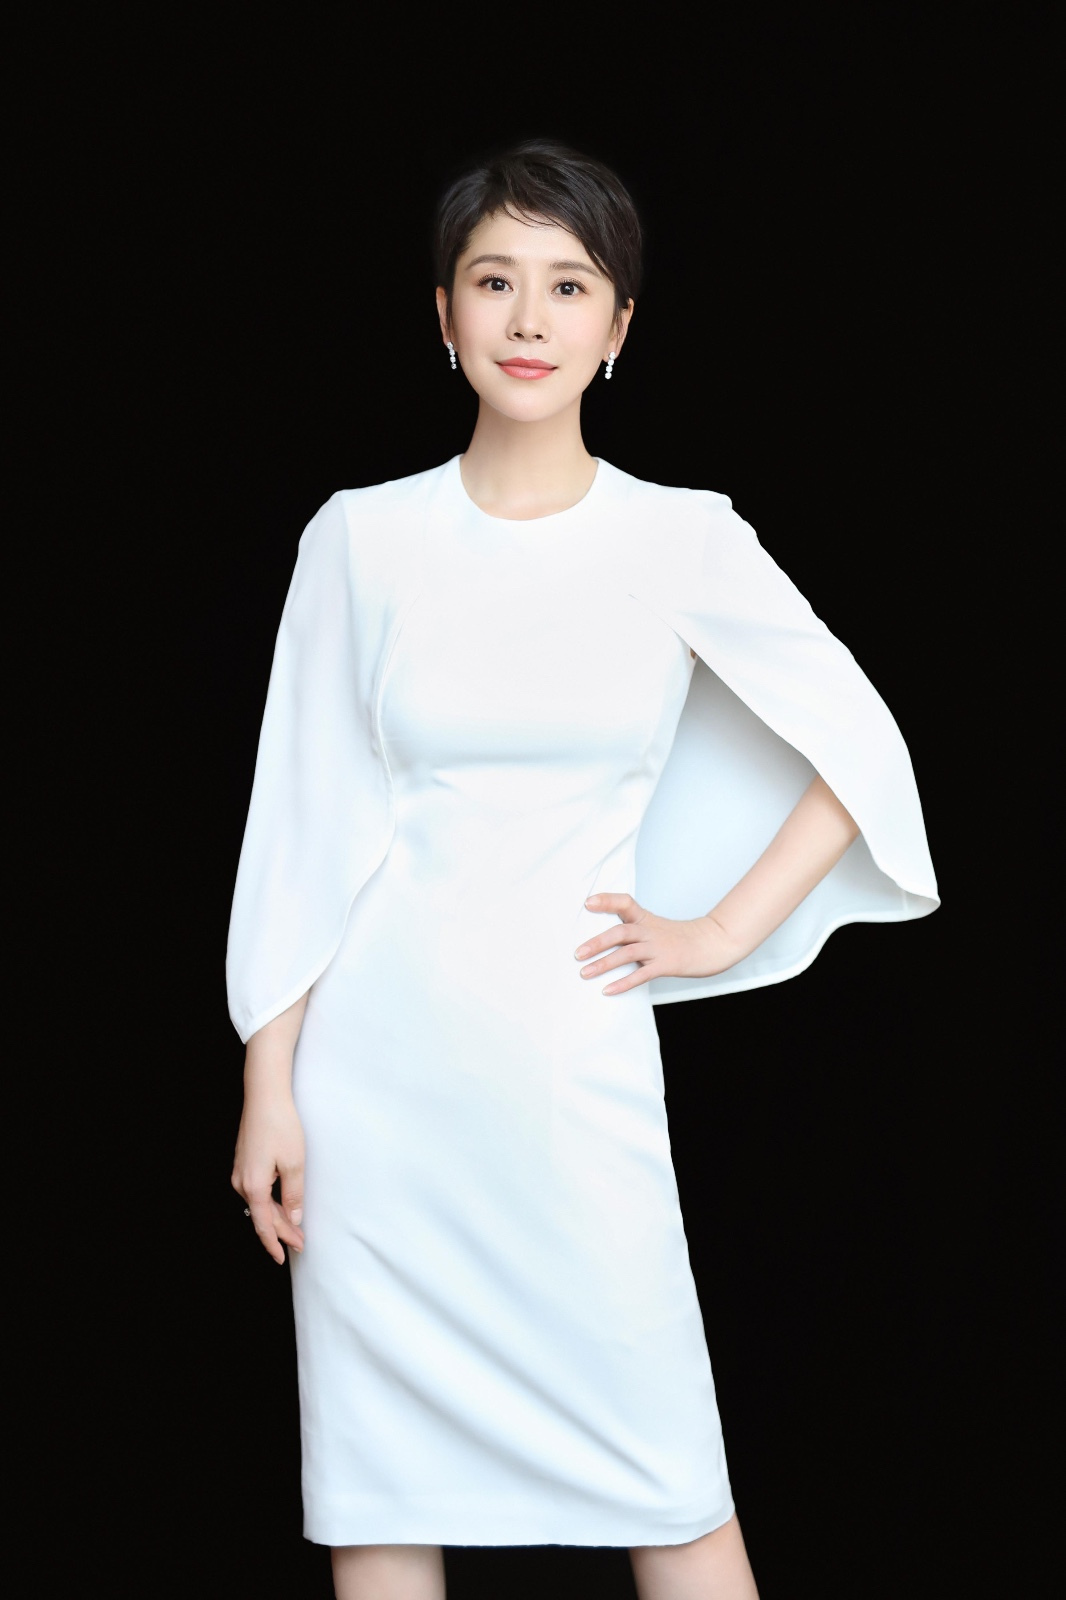 海清出席品牌活动 白色连衣裙尽展温婉成熟魅力